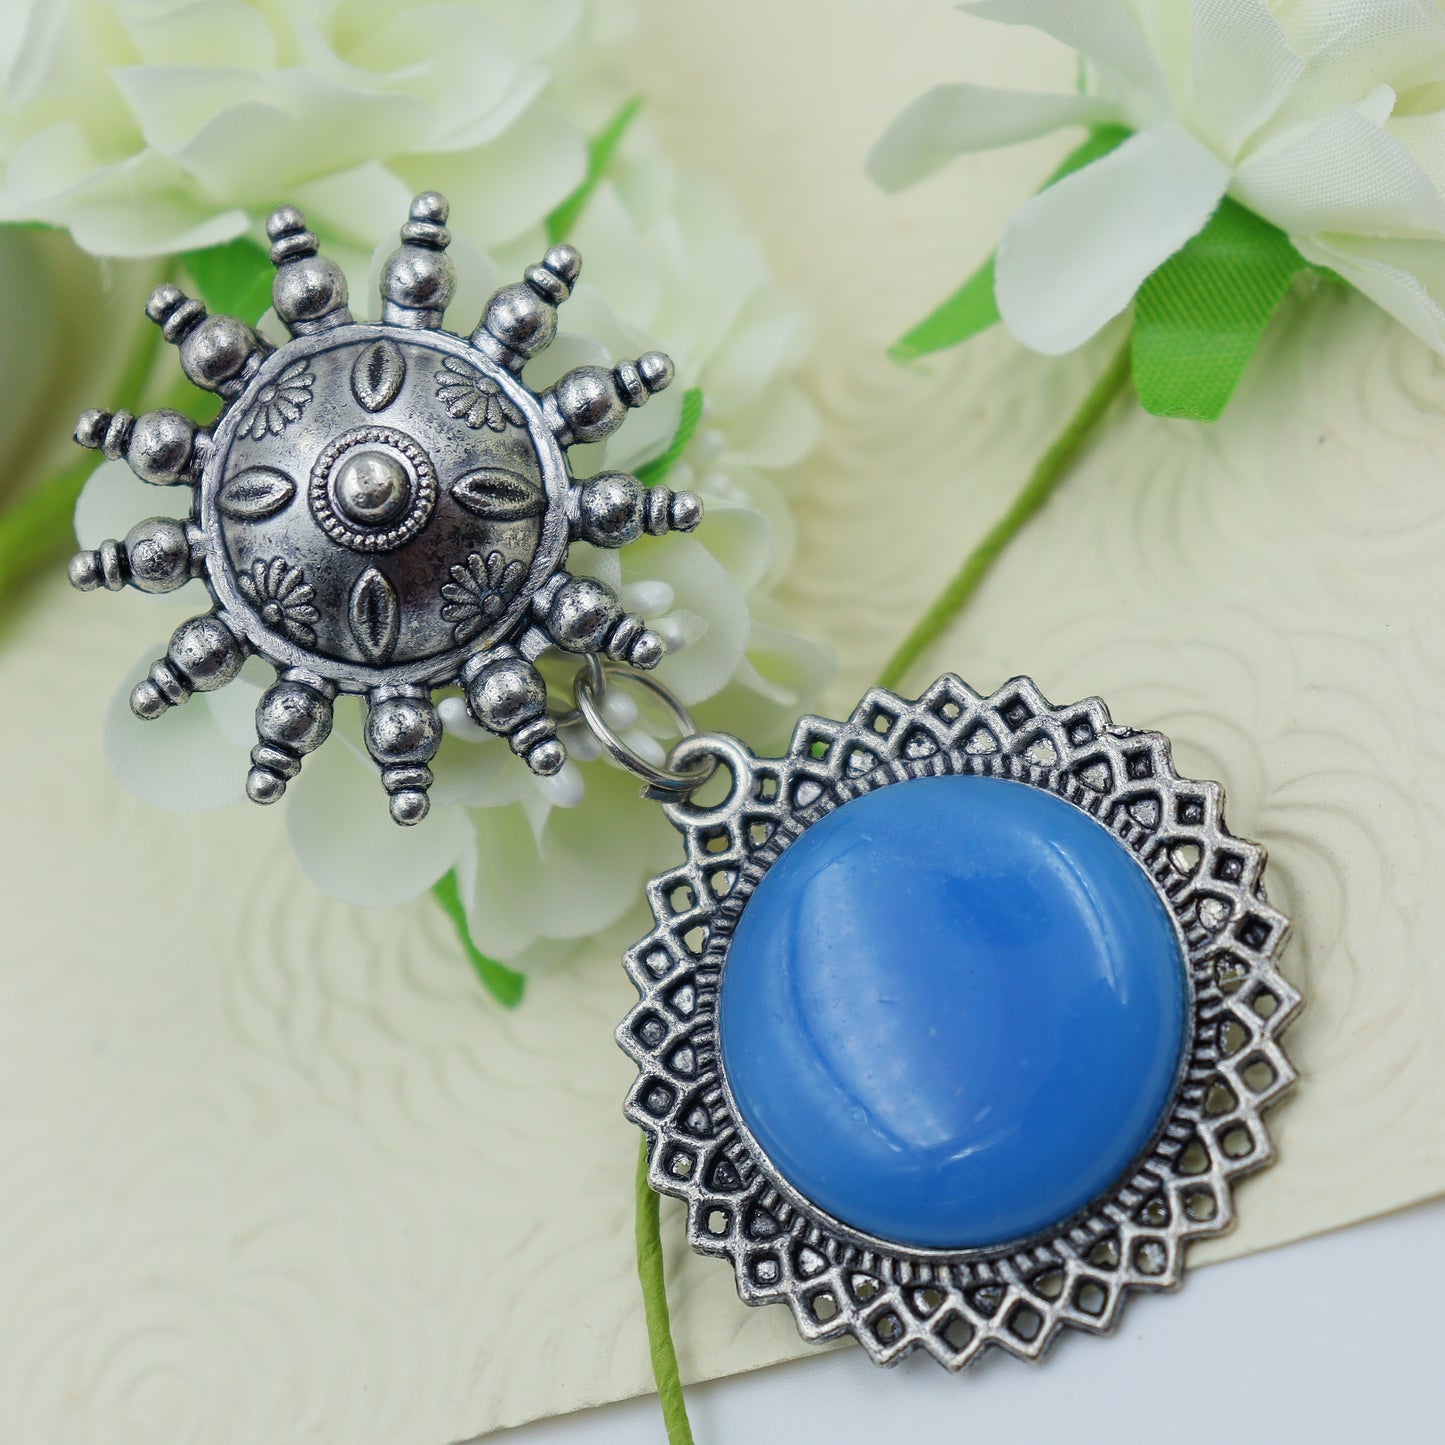 Blue oxidized earrings for women